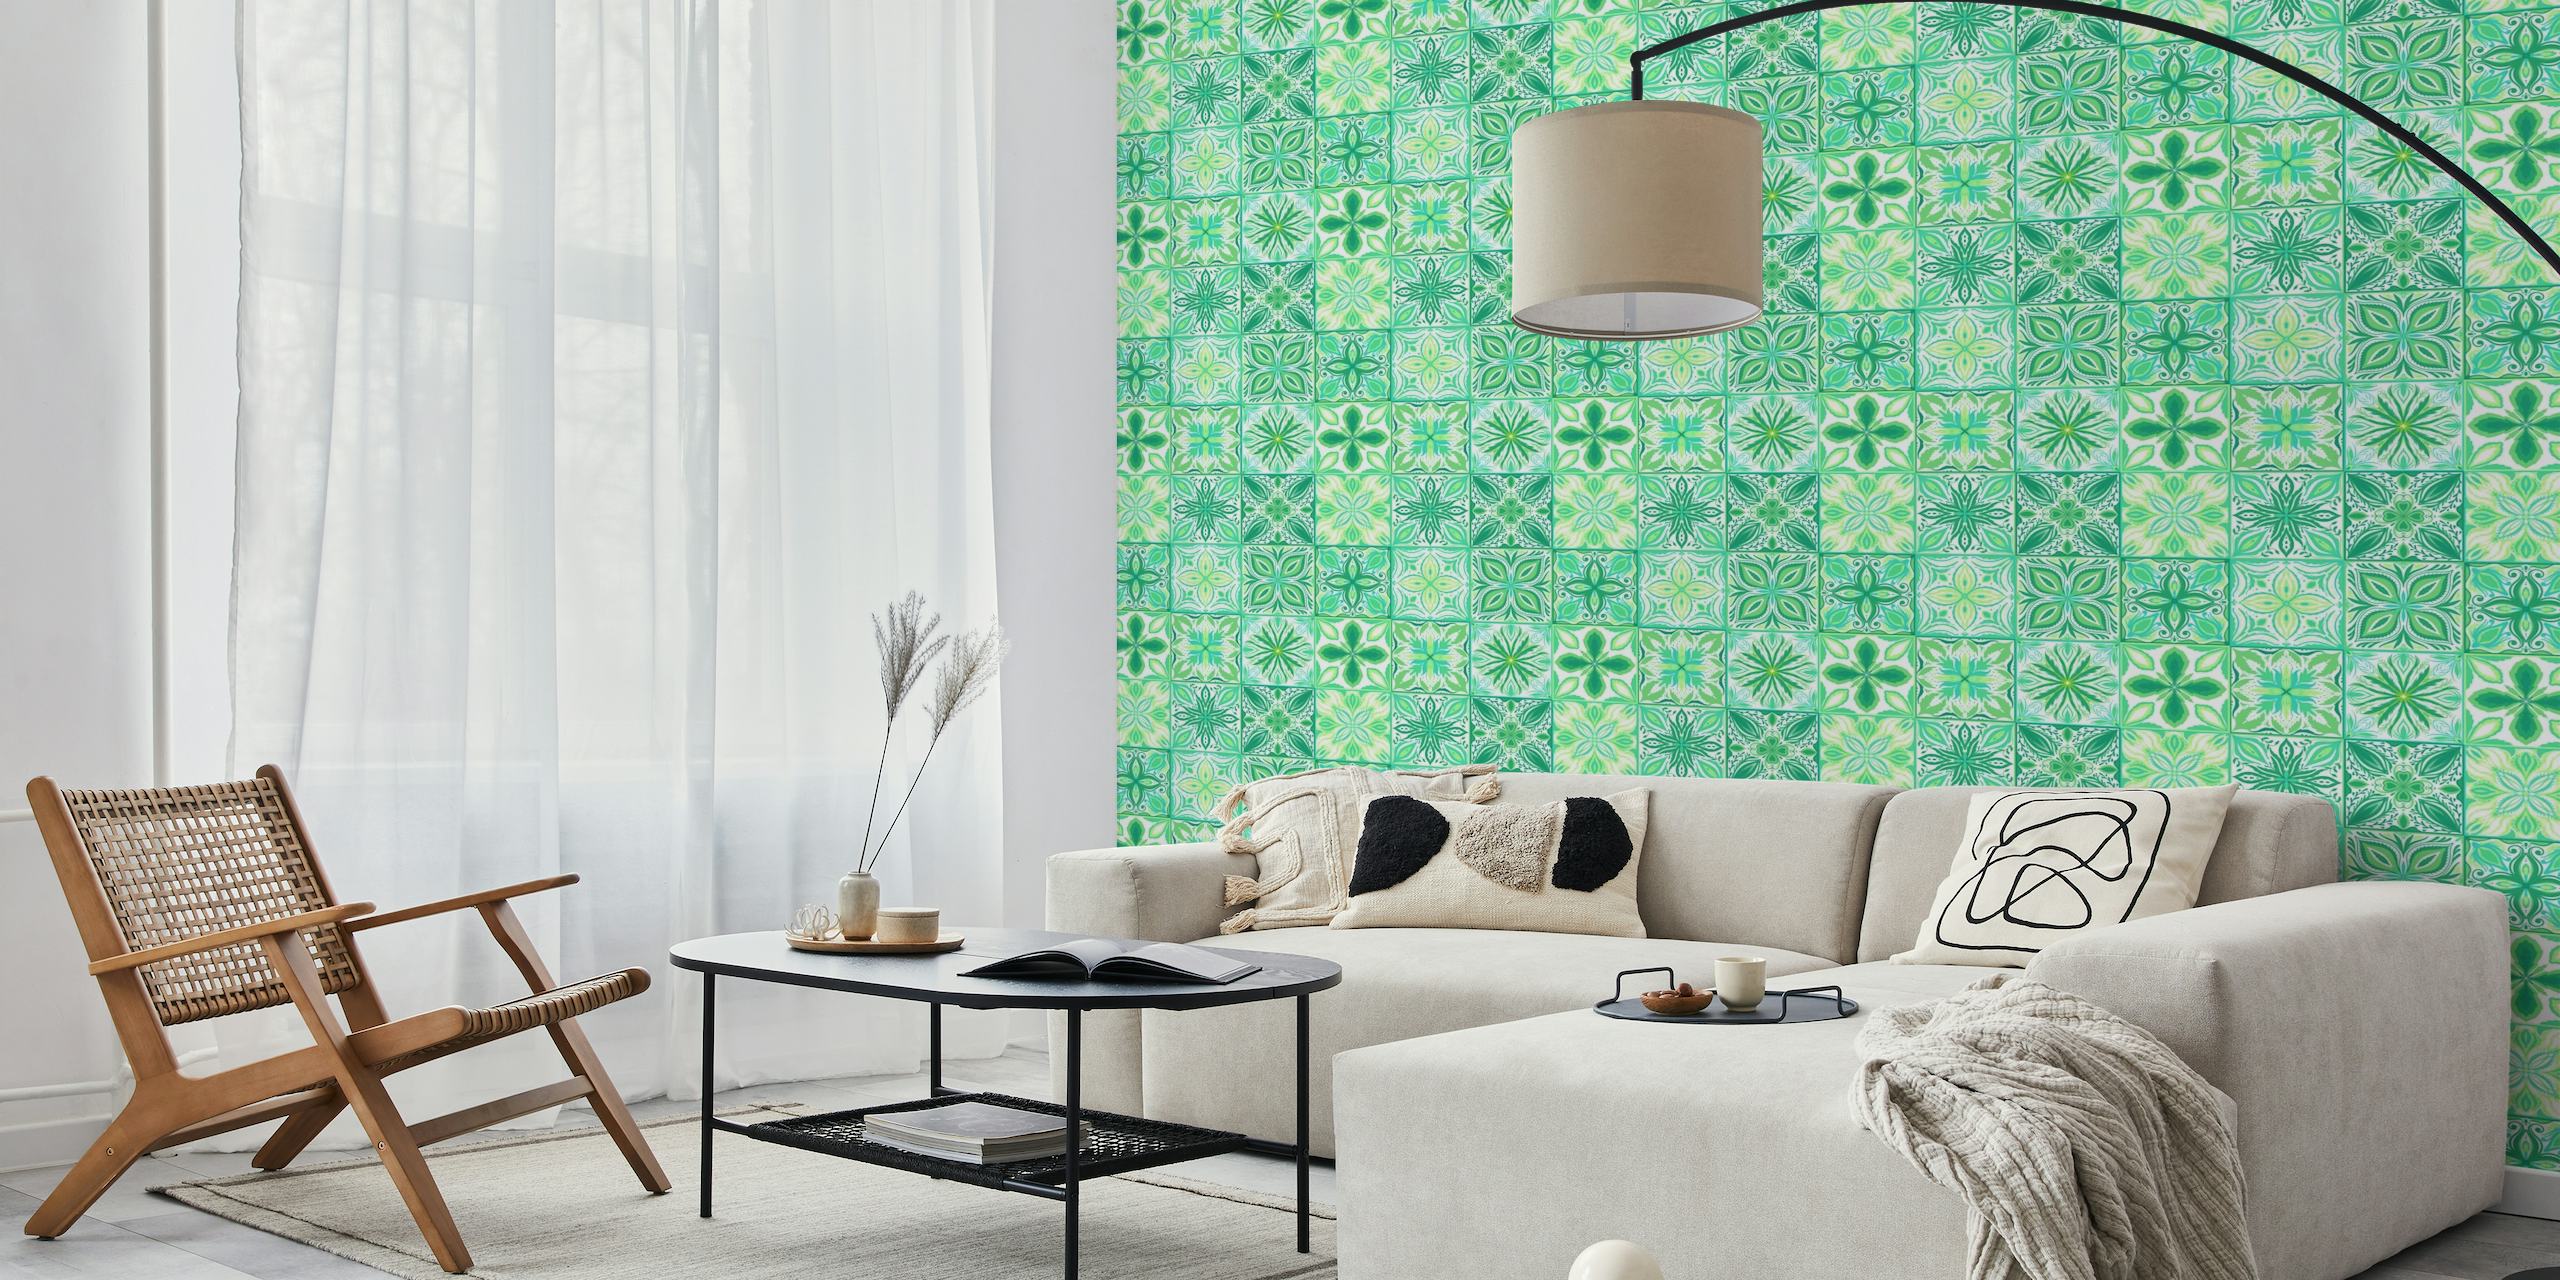 Ornate tiles in green and white tapeta